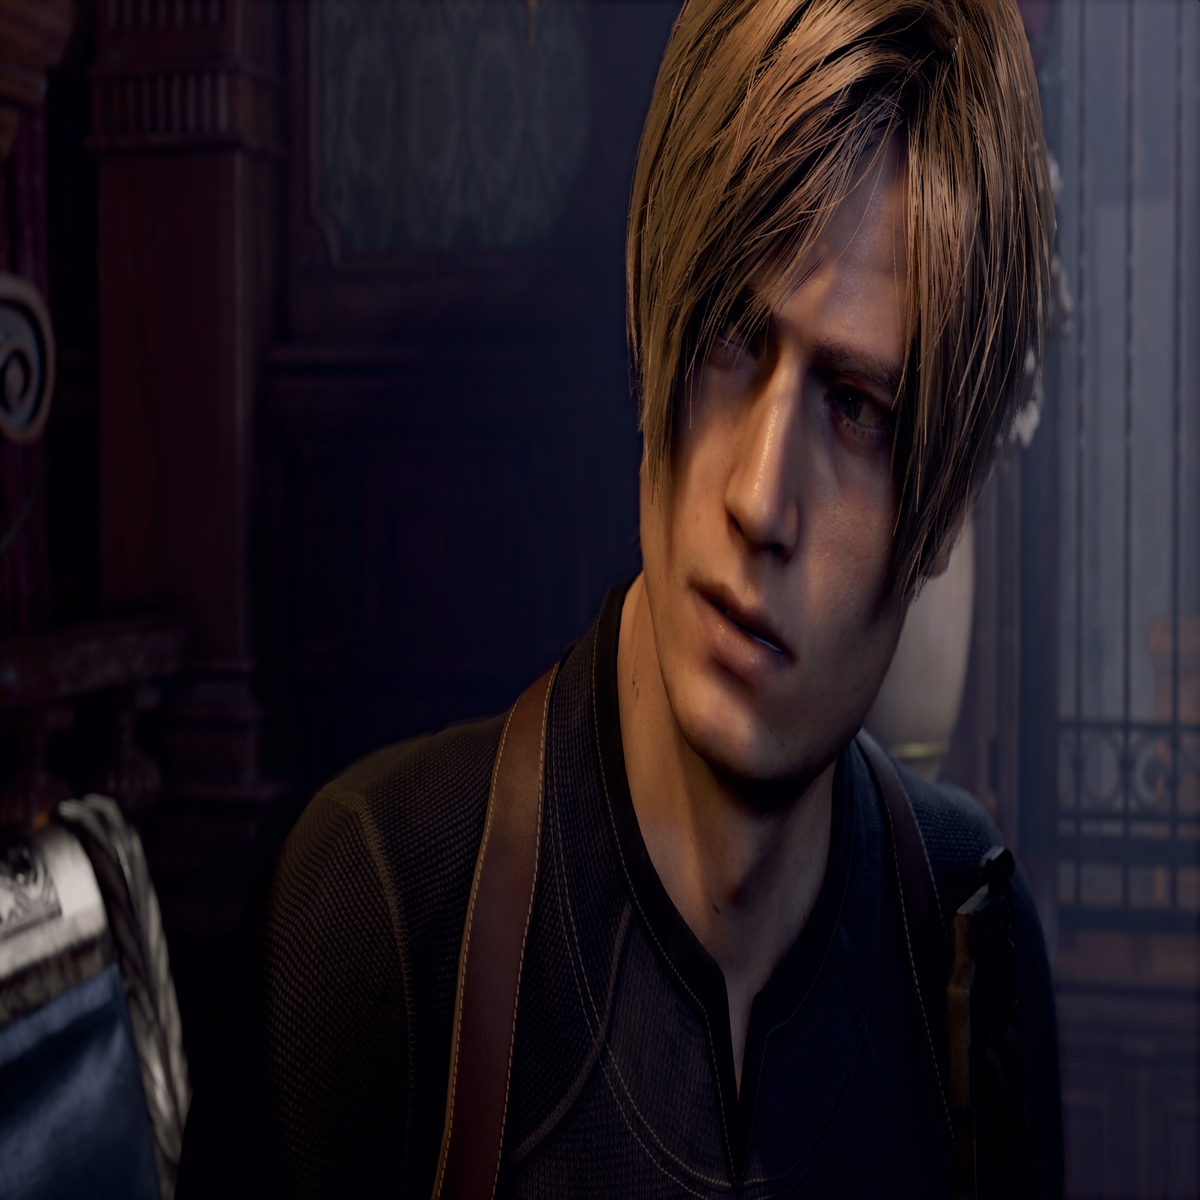 Resident Evil 4 Remake  Review completo do jogo (PT)